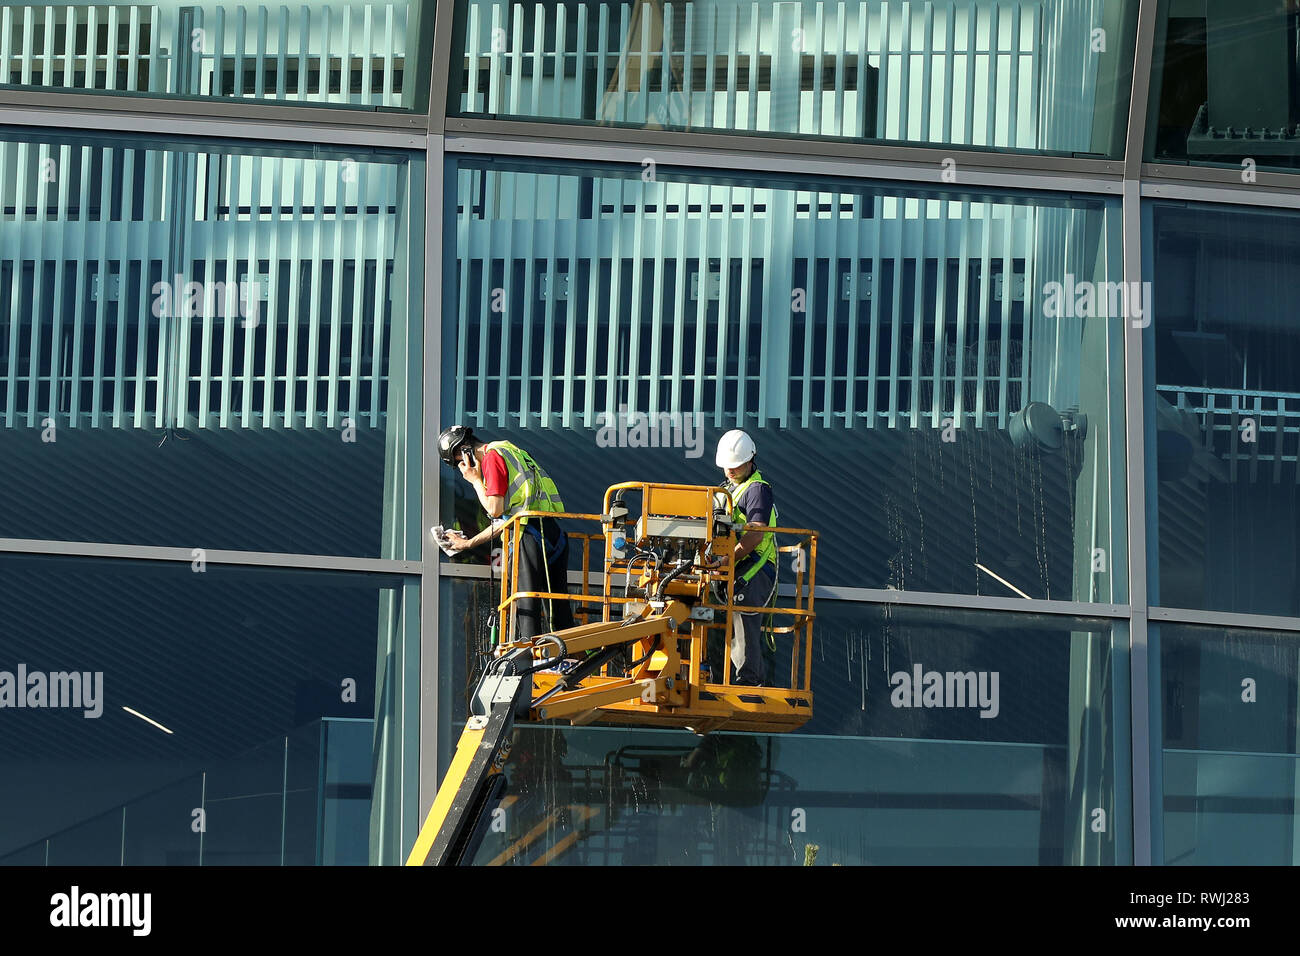 Handwerker Reinigung das neue Stadion windows - Tottenham Hotspur neue Stadion Entwicklung, White Hart Lane, London - 27. Februar 2019 Stockfoto